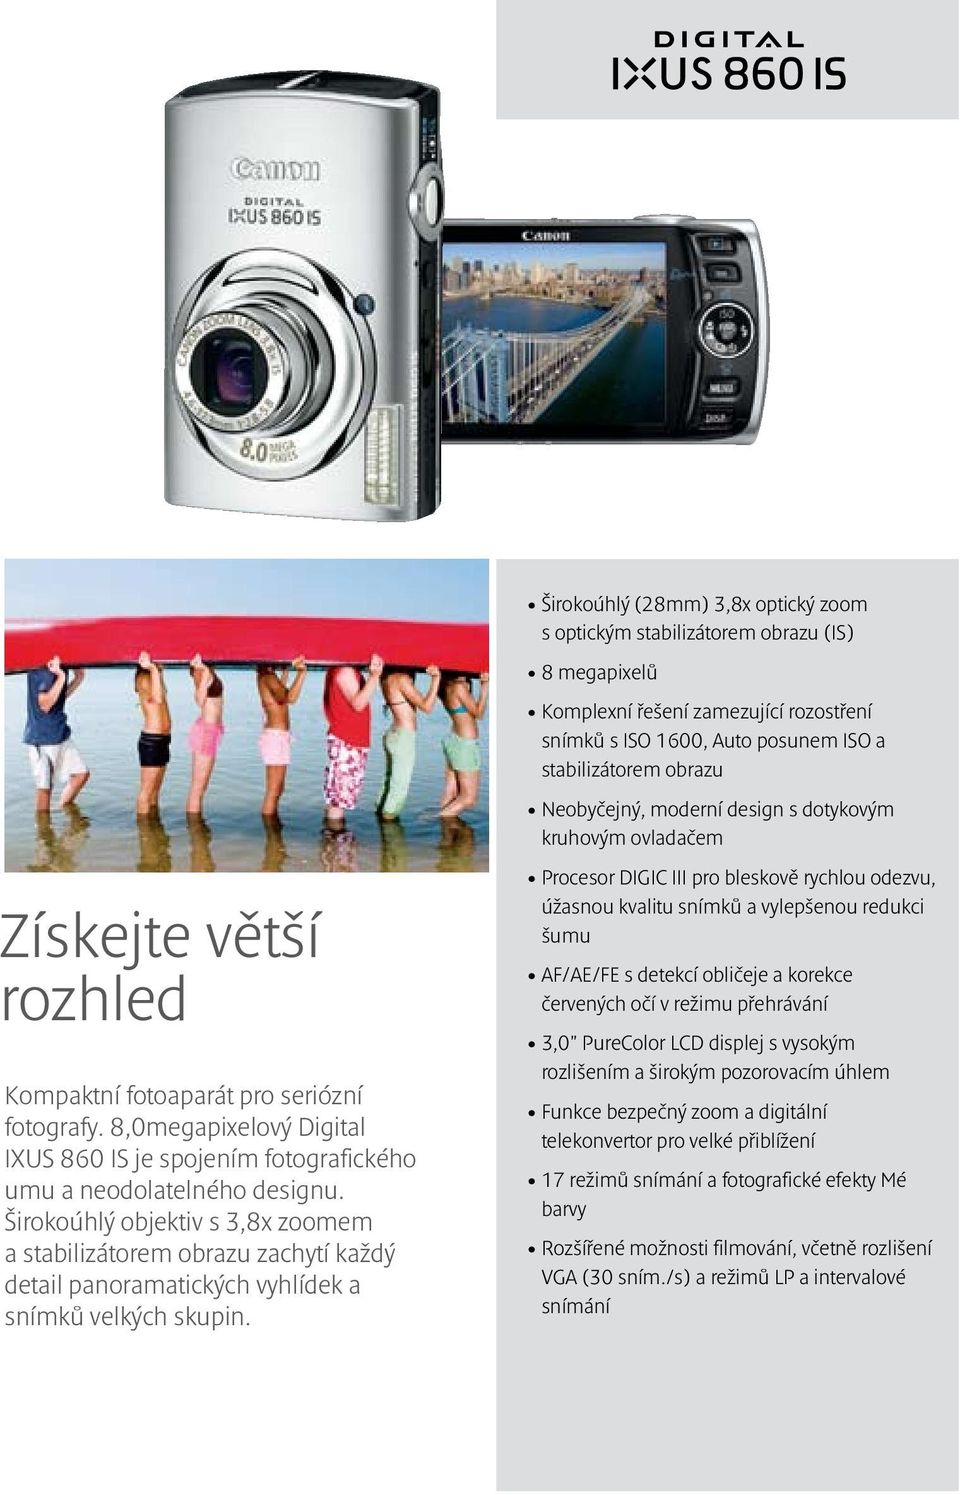 8,0megapixelový Digital IXUS 860 IS je spojením fotografického umu a neodolatelného designu.